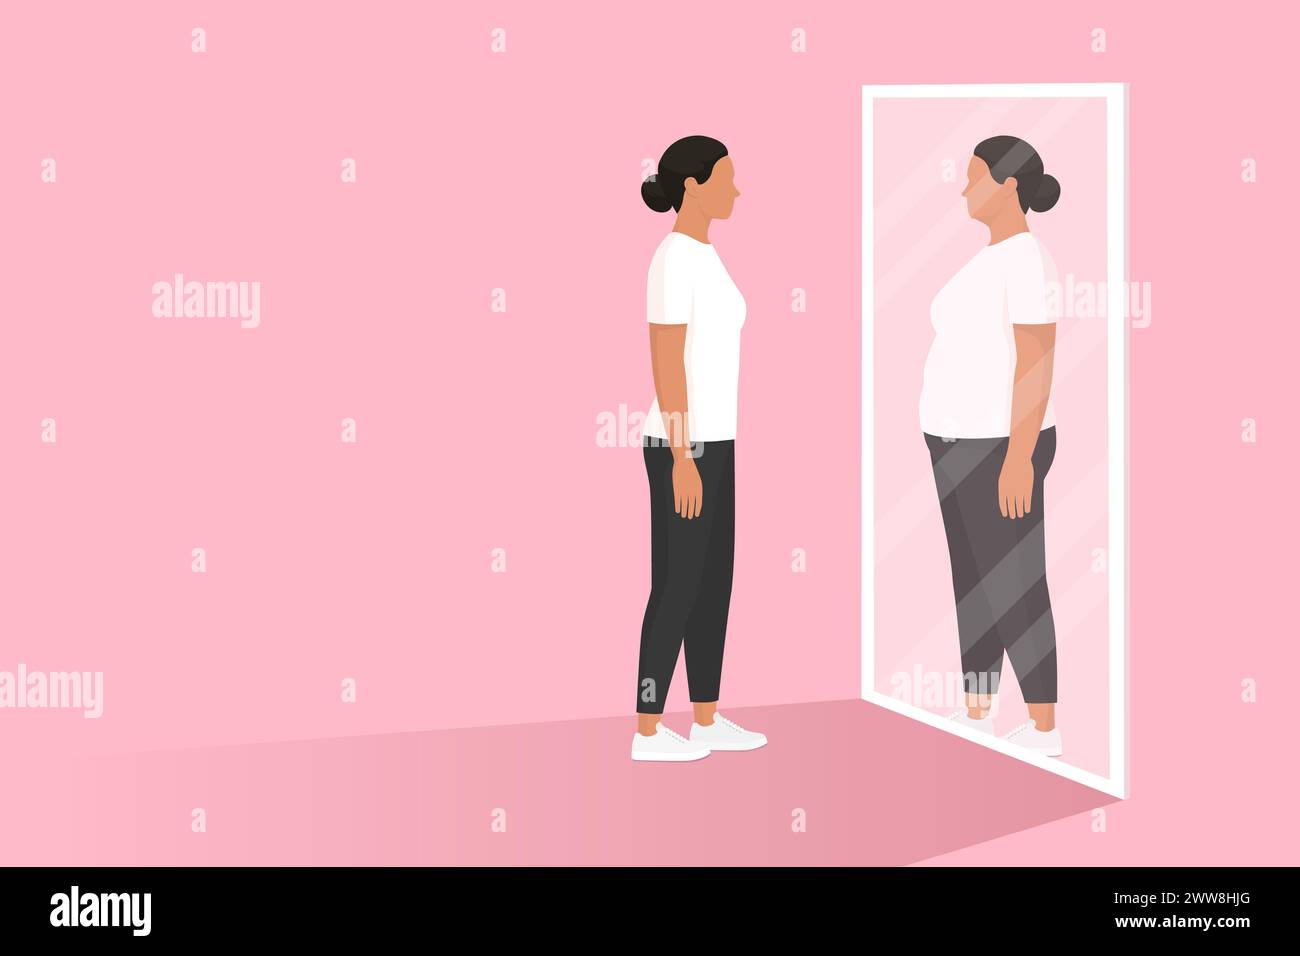 Femme regardant le miroir et se voyant en surpoids : troubles alimentaires et concept d'anorexie Illustration de Vecteur